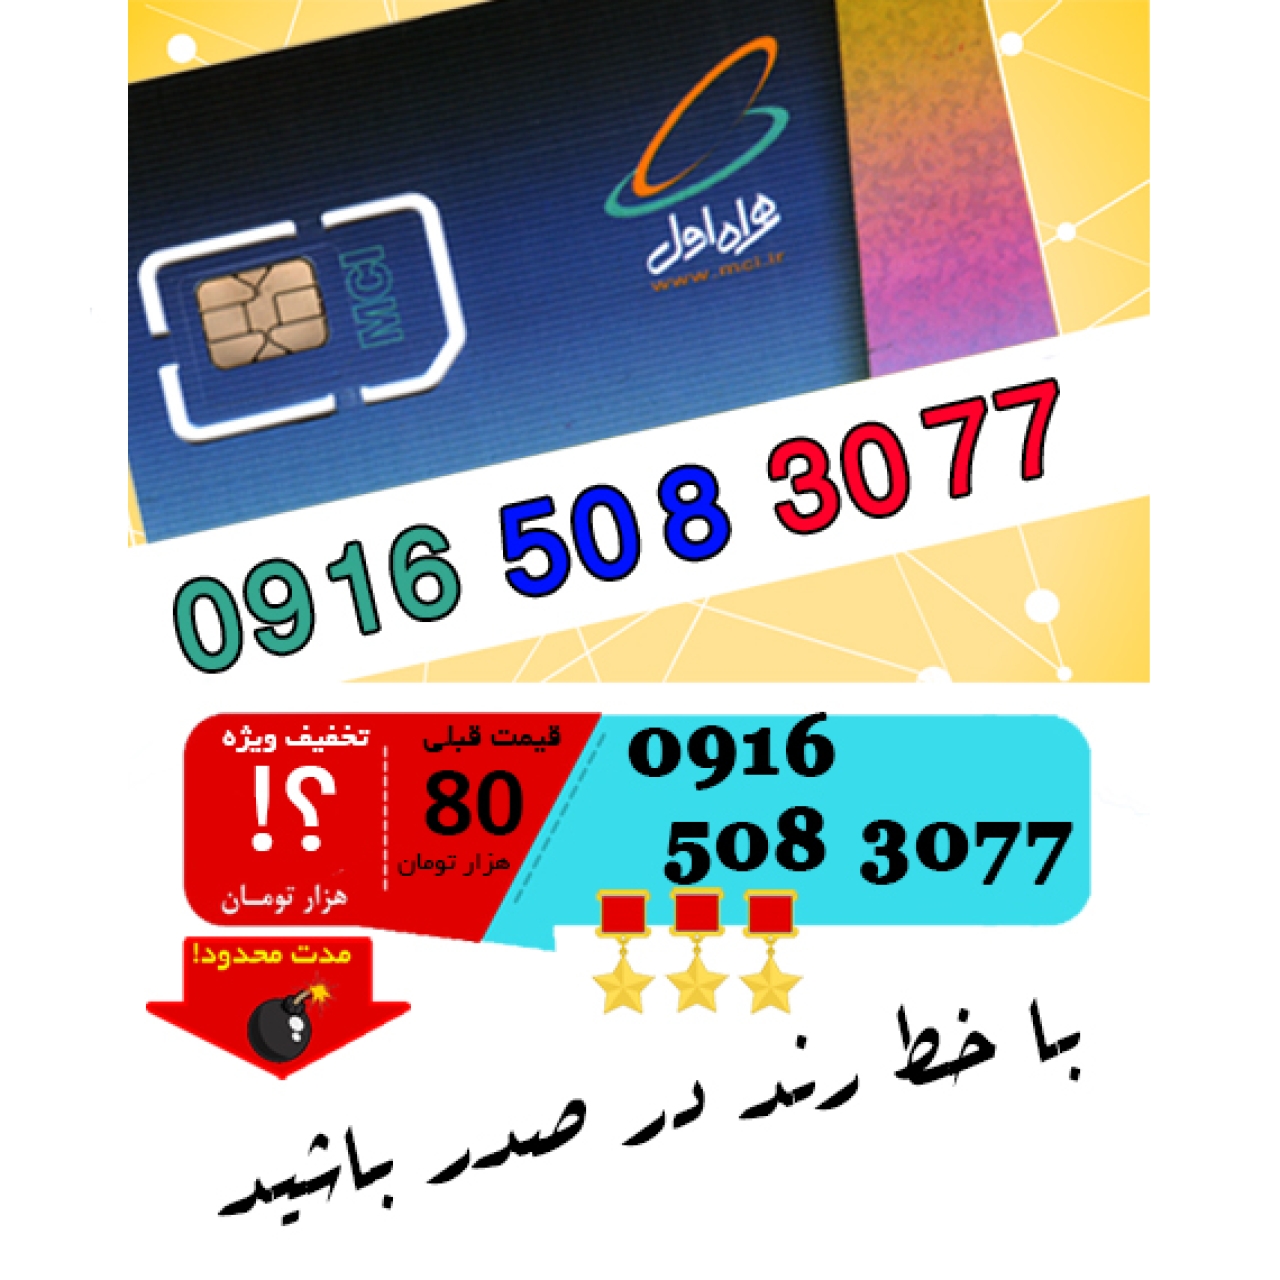 سیم کارت اعتباری رند همراه اول 09165083077